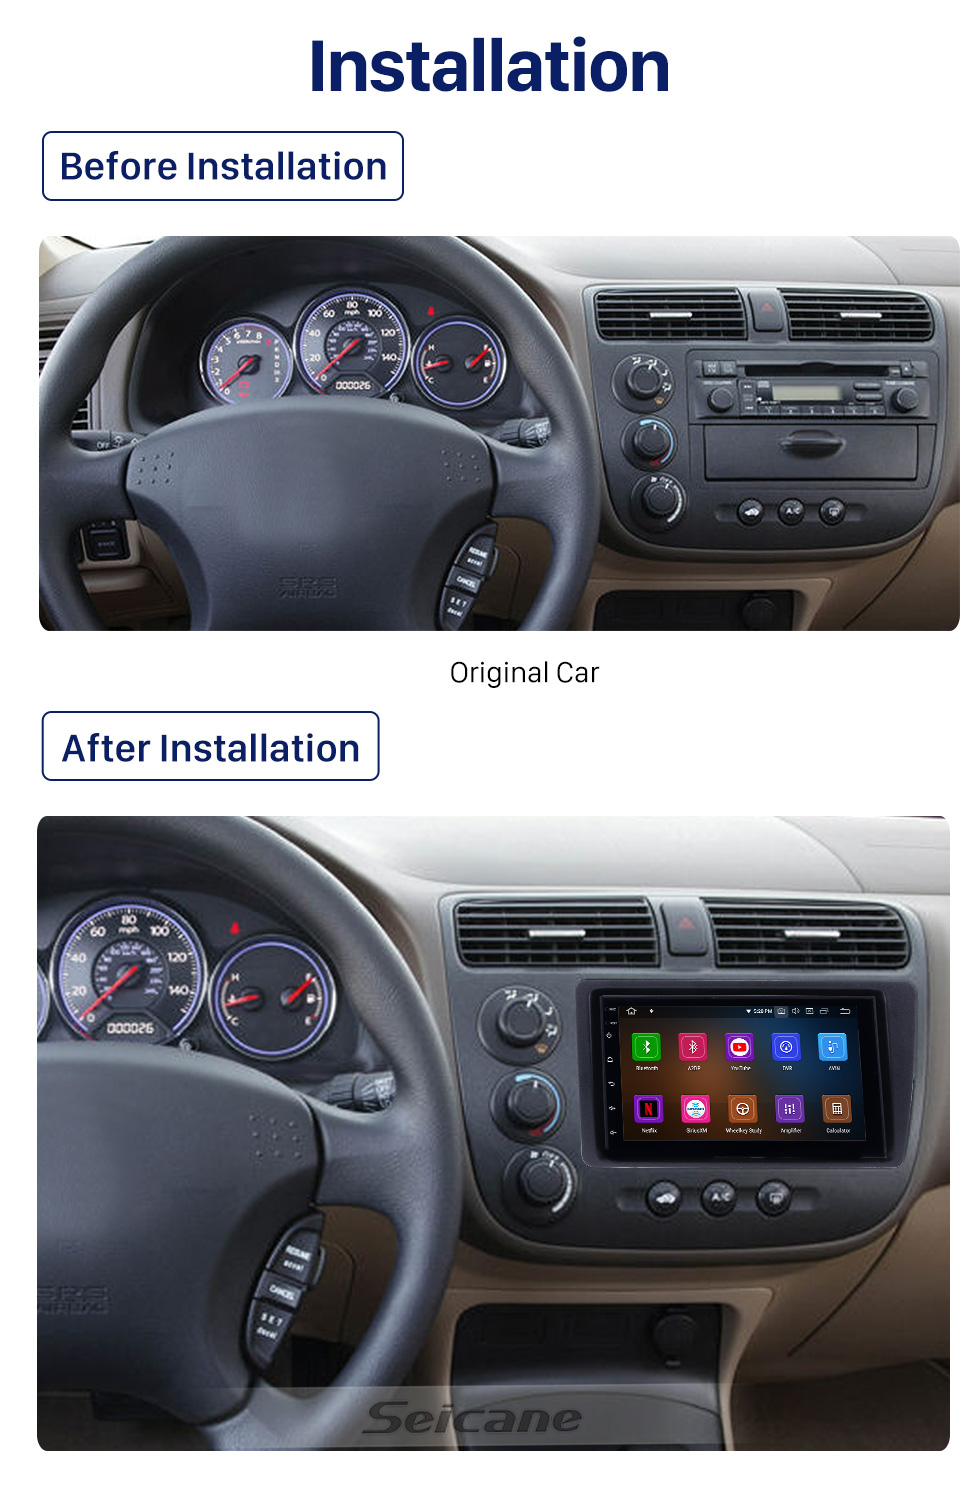 Seicane 7 polegada Android 10.0 Carro Sistema de Navegação GPS Estéreo para 2001-2005 Honda Civic com Wi-fi Bluetooth 1080 P HD Touchscreen AUX apoio FM Link do Espelho OBD2 SWC